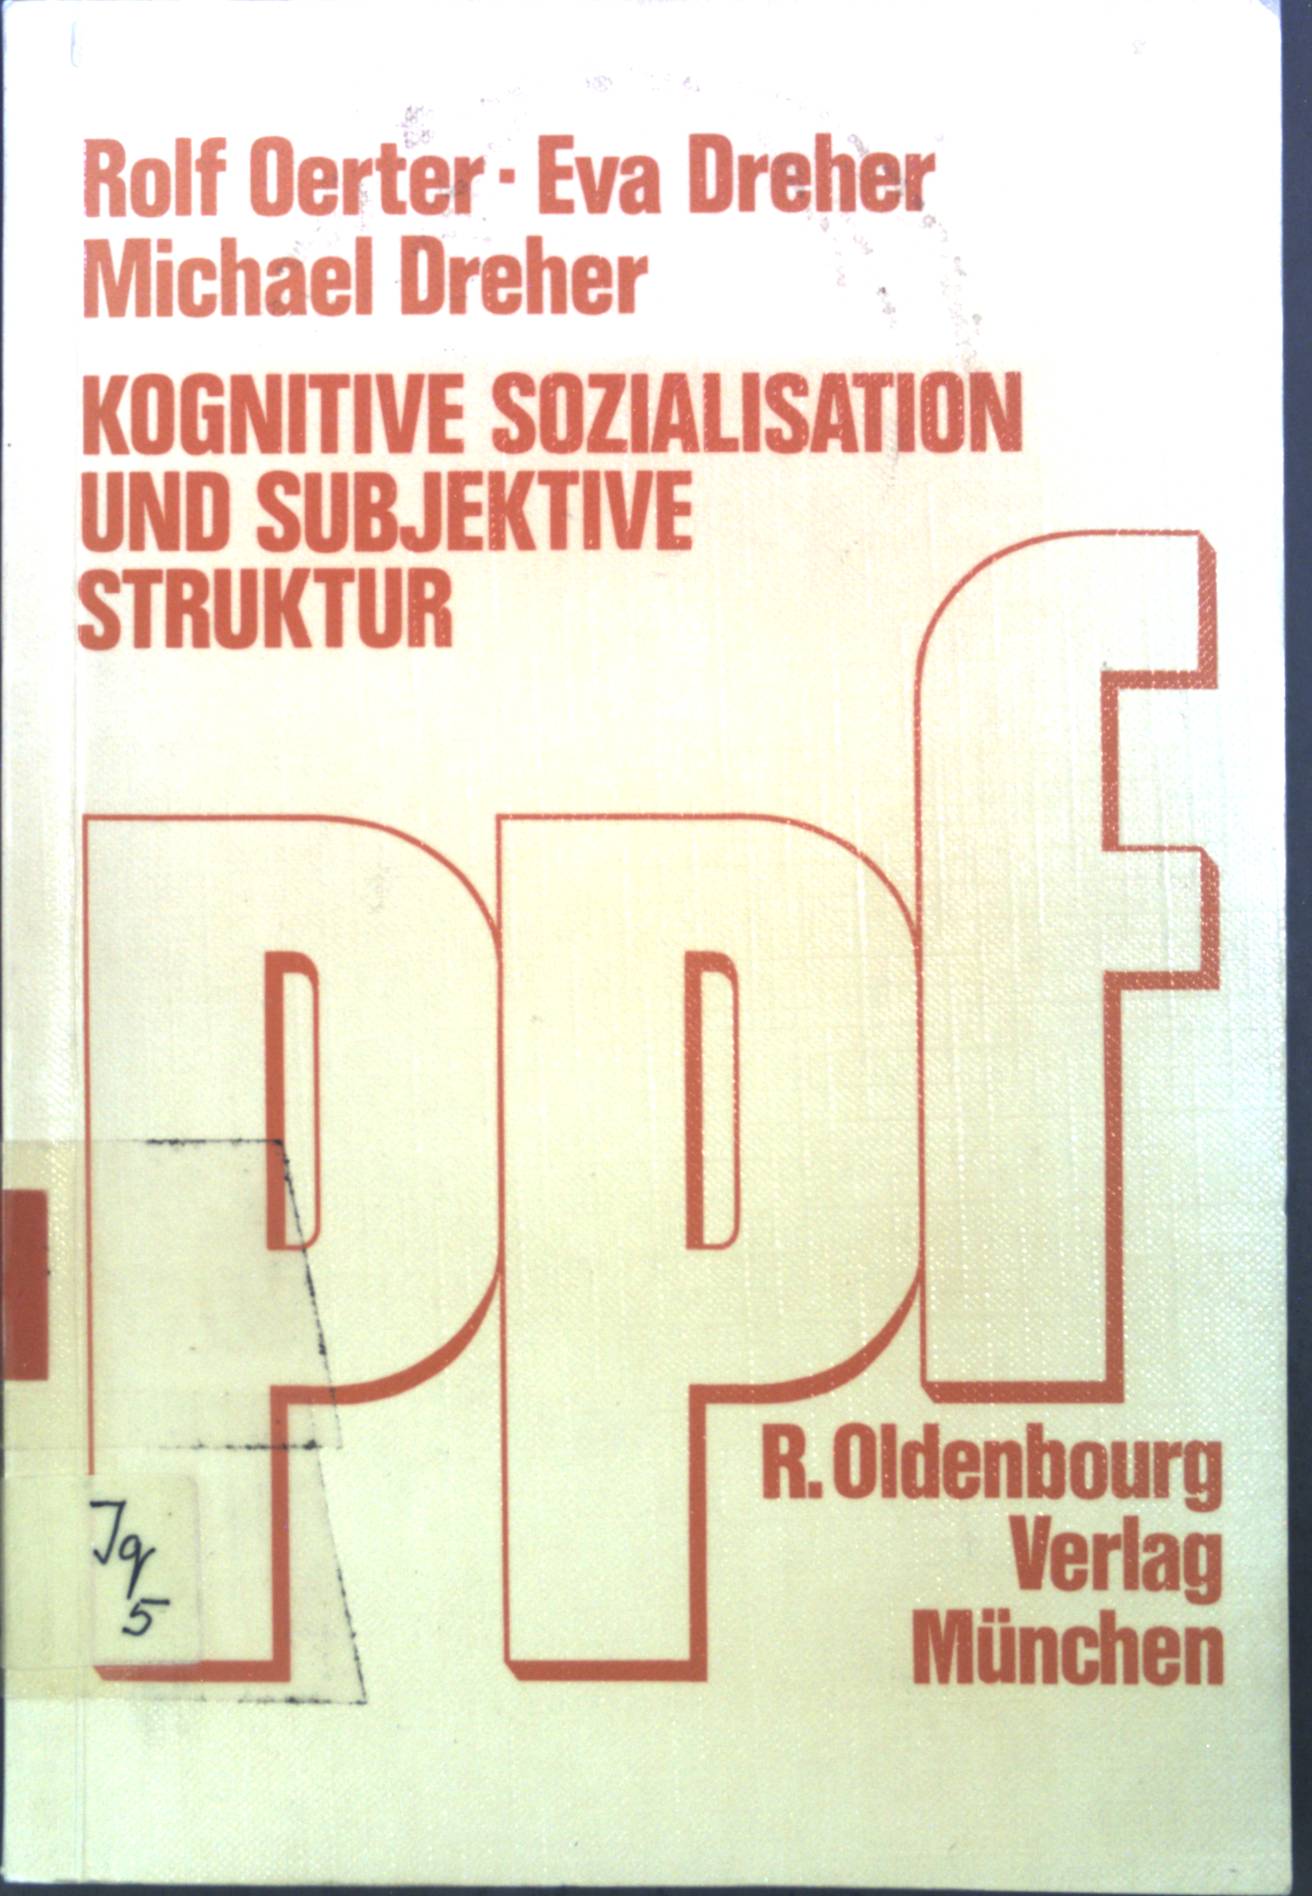 Kognitive Sozialisation und subjektive Struktur. Pädagogisch-psychologische Forschungen - Oerter, Rolf, Eva Dreher Michael Dreher u. a.